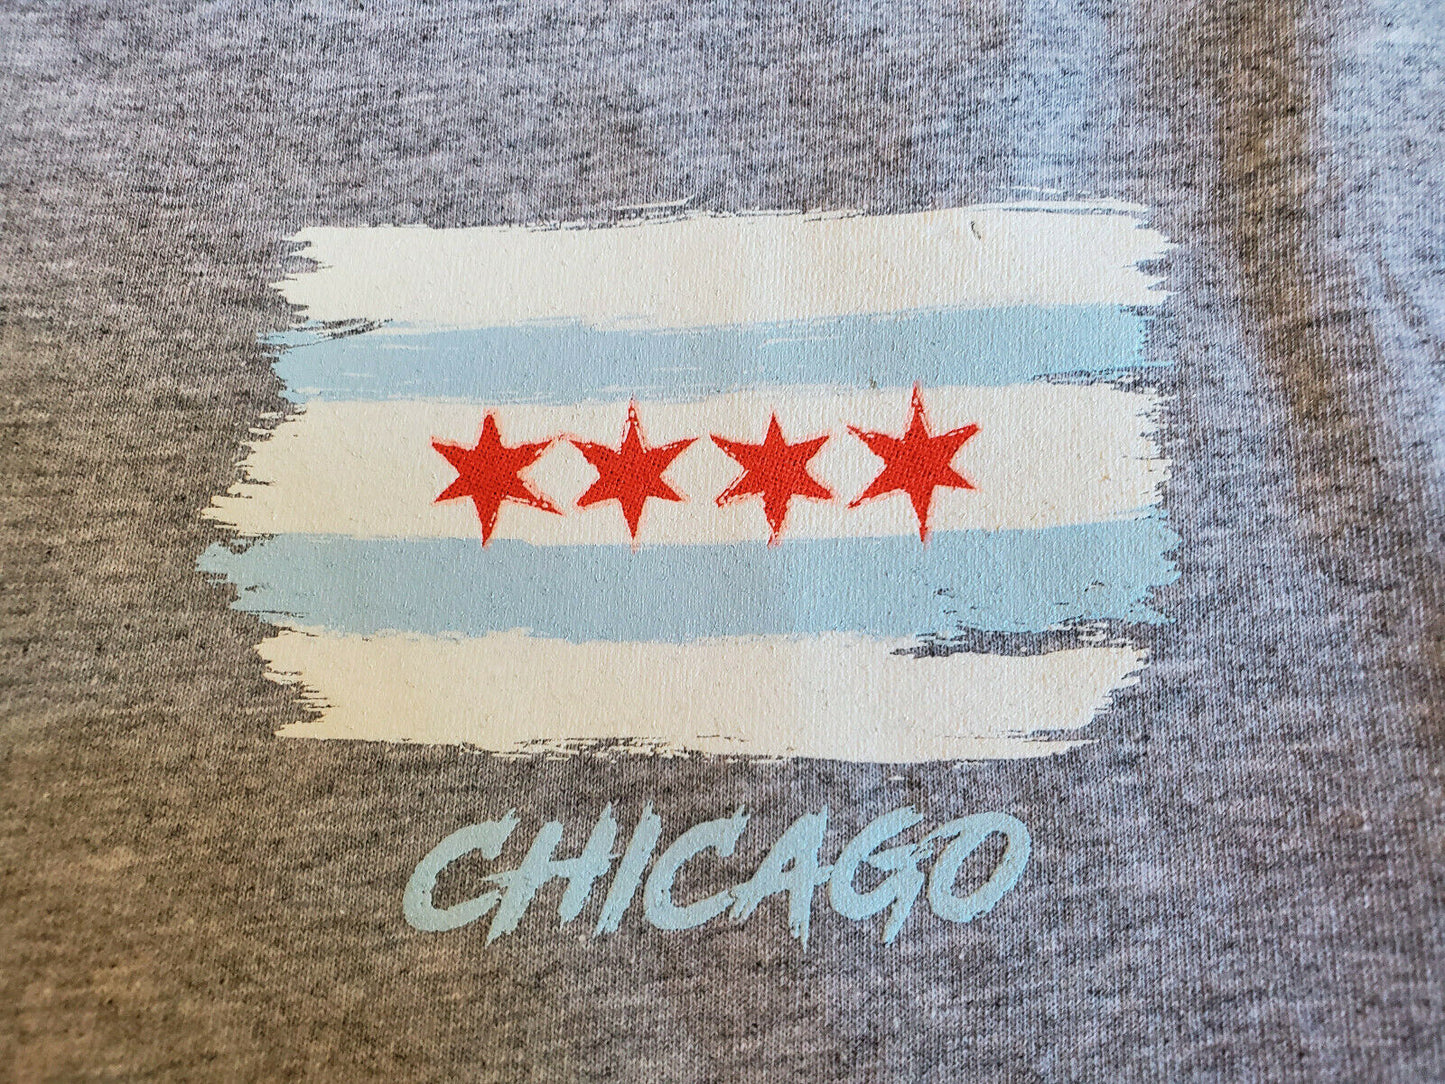 Chicago Flag T-shirt